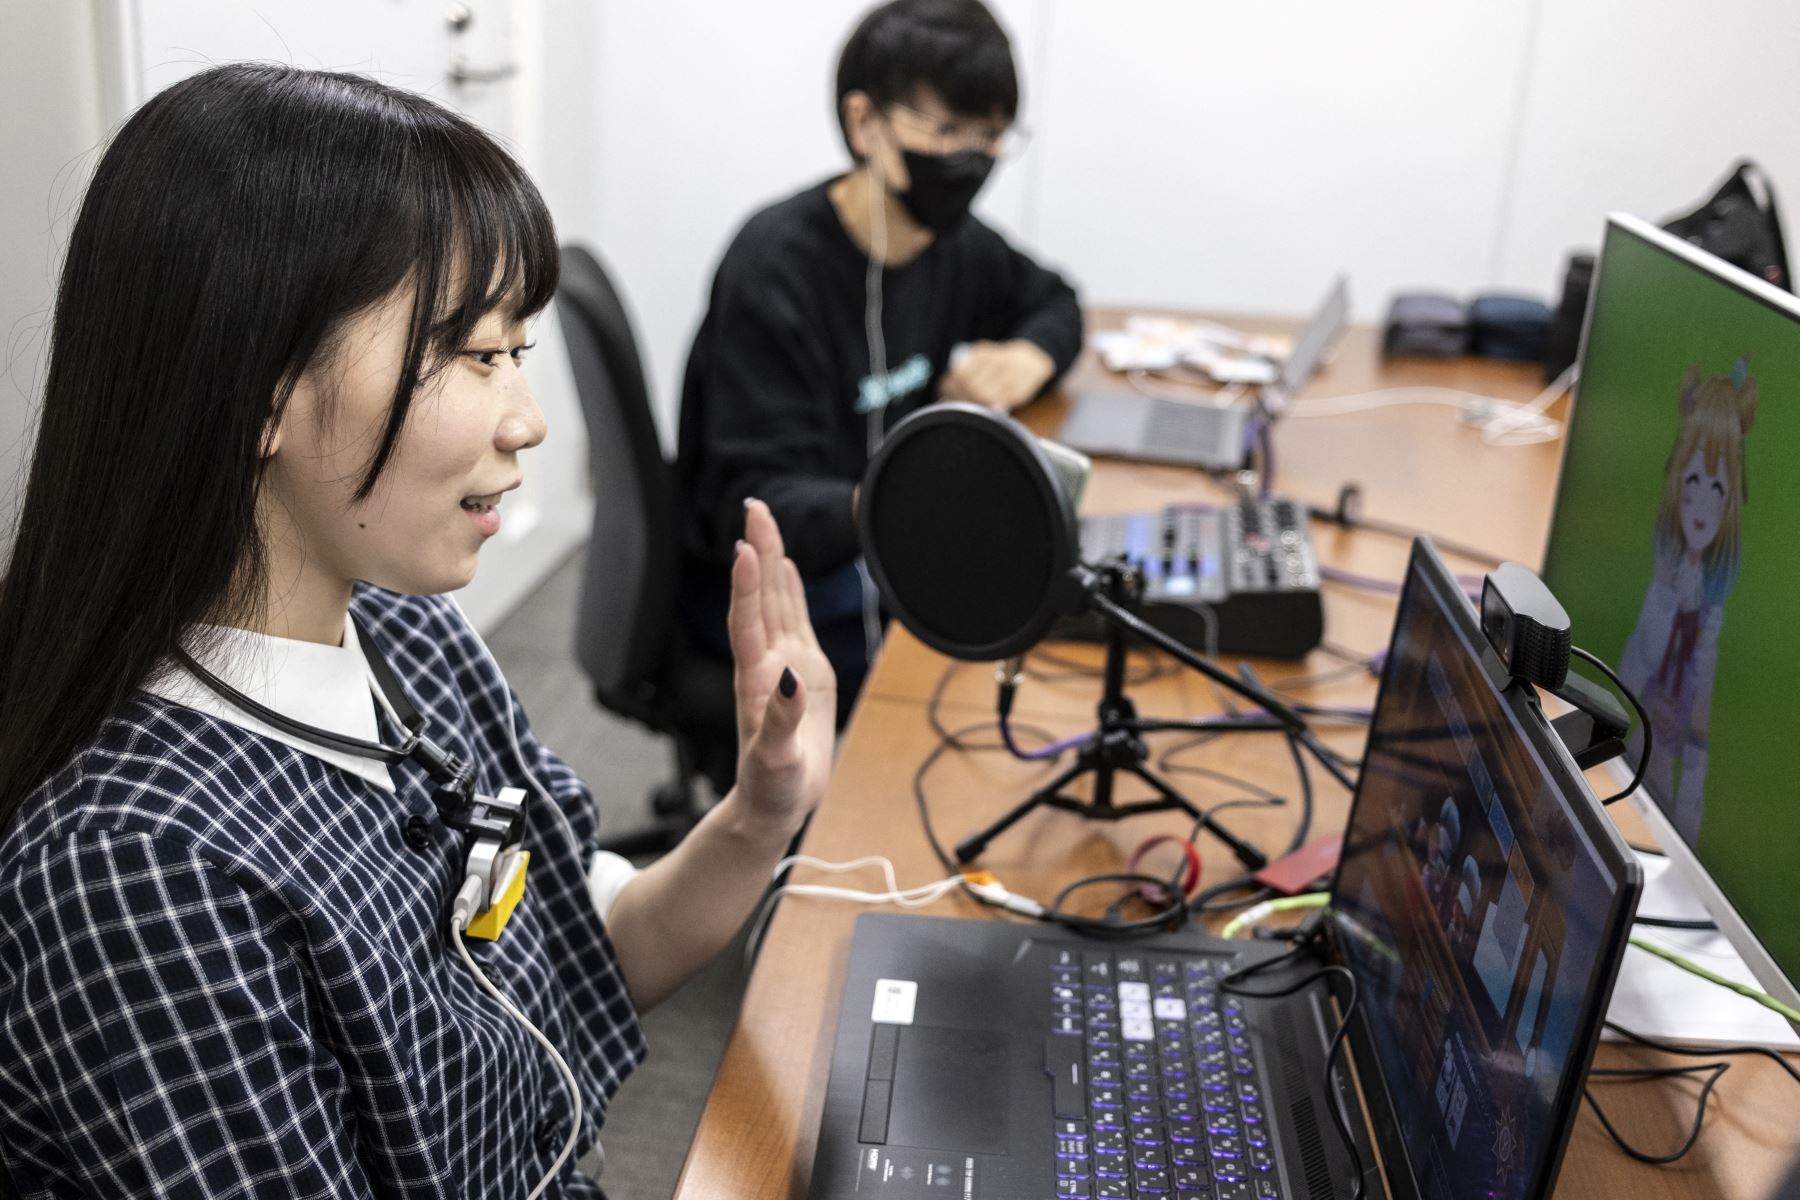 Los youtubers virtuales hacen verdaderas fortunas en Japón